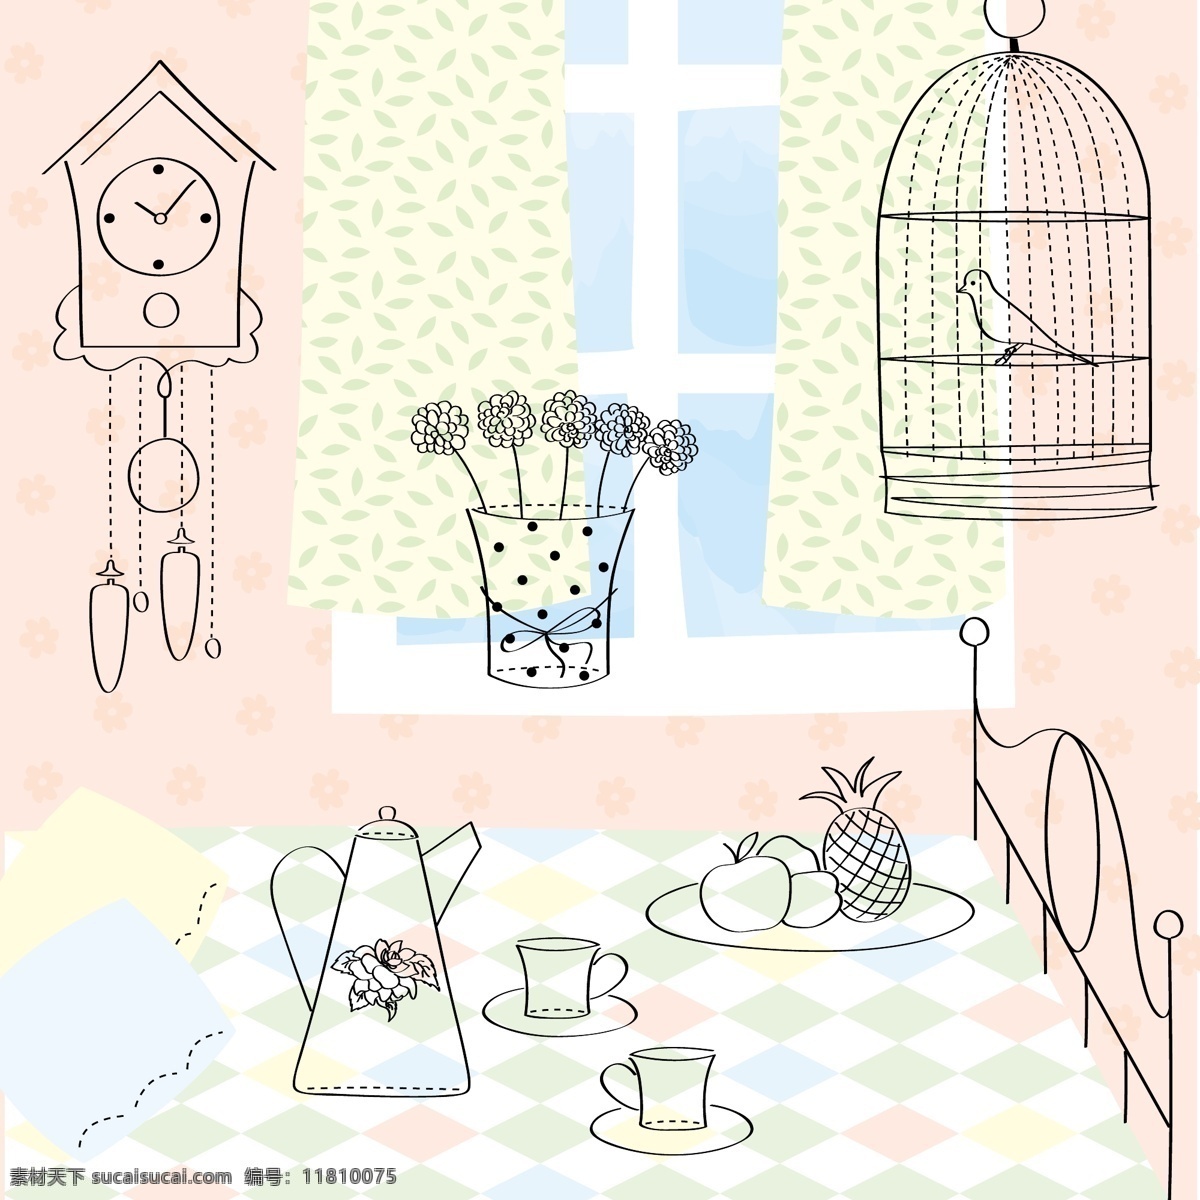 粉色 房间 插画 风景 背景 矢量 线条 时钟 桌子 卡通 手绘